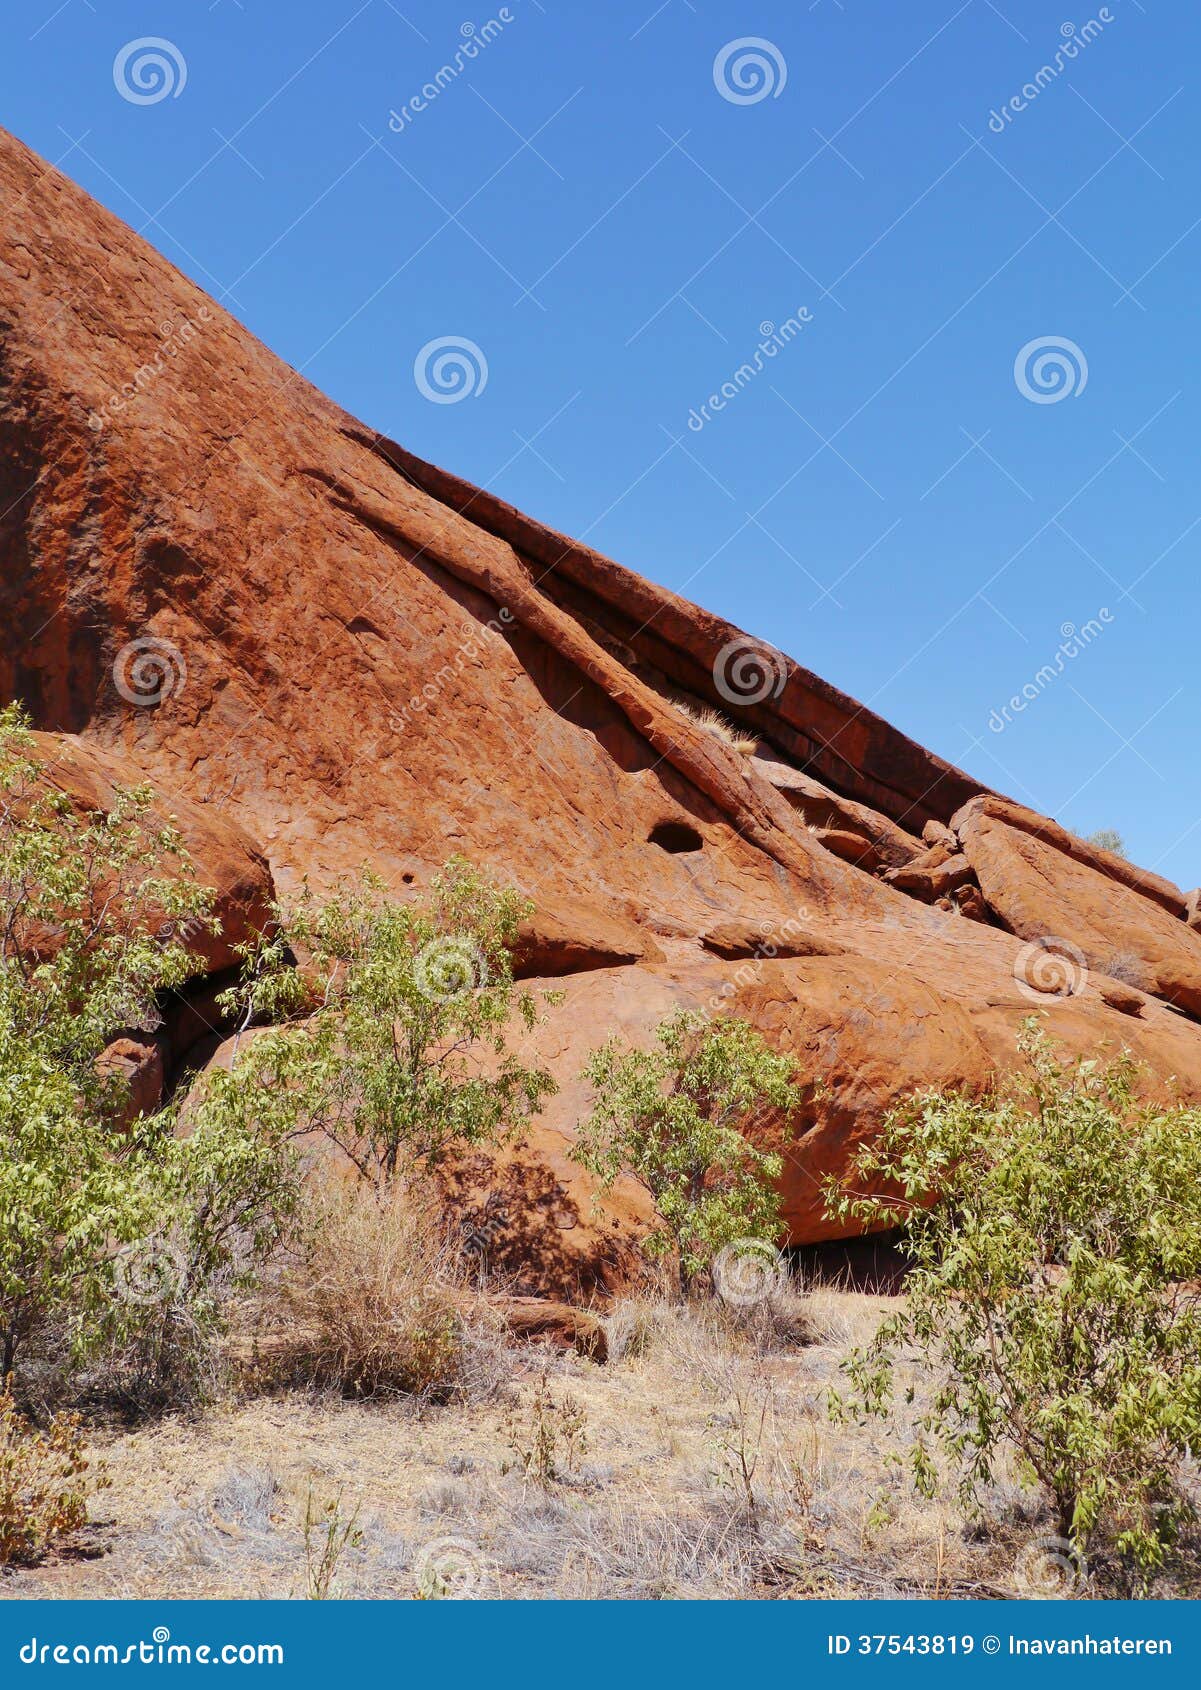 erosion of the australian red rocks